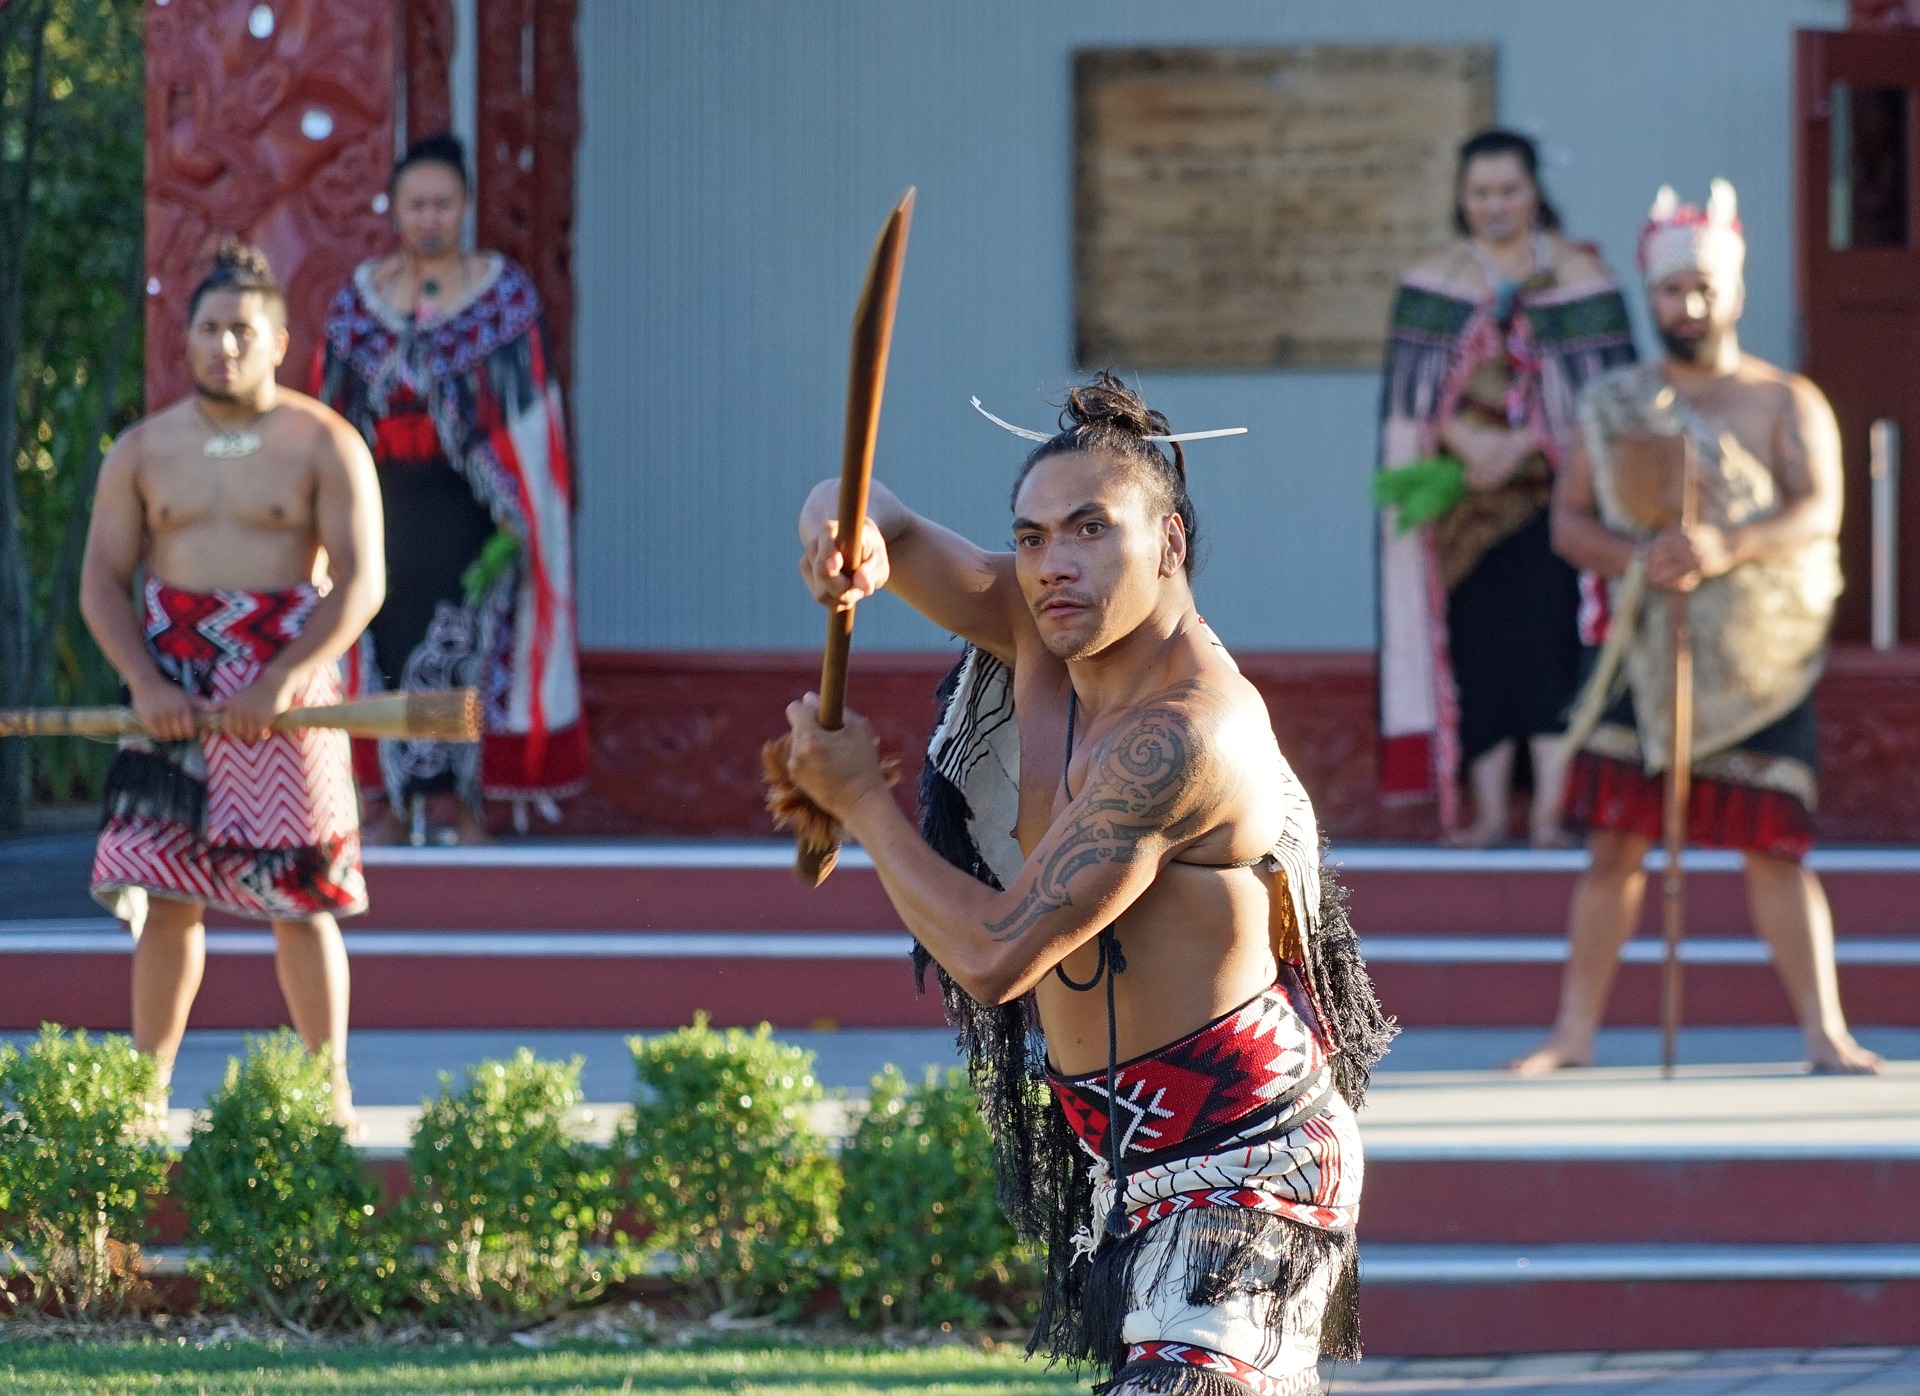 Ein Maori Krieger zeigt sich im Showkampf in Großaufnahme mit einem Schwert. Im Hintergrund sind weitere Maori Krieger zu sehen.